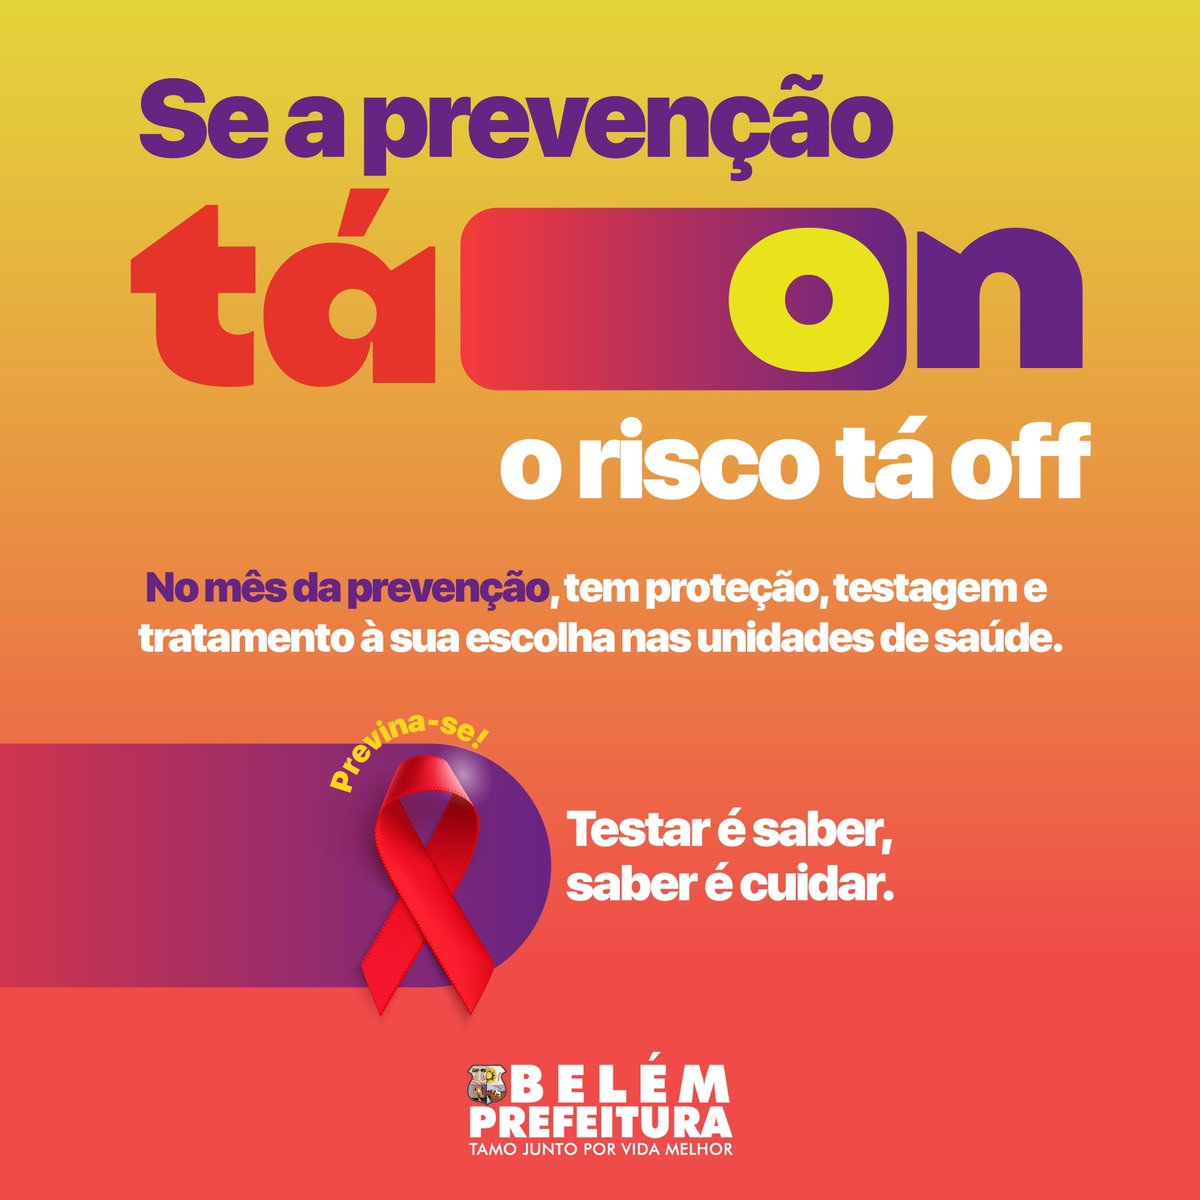 A Prefeitura de Belém apoia a luta contra o vírus da HIV, a Aids, e outras IST (infecções sexualmente transmissíveis), chamando a atenção para a prevenção, assistência e a proteção dos direitos das pessoas infectadas com o HIV.😉❤️ #PrefeituraBelem #DezembroVermelho